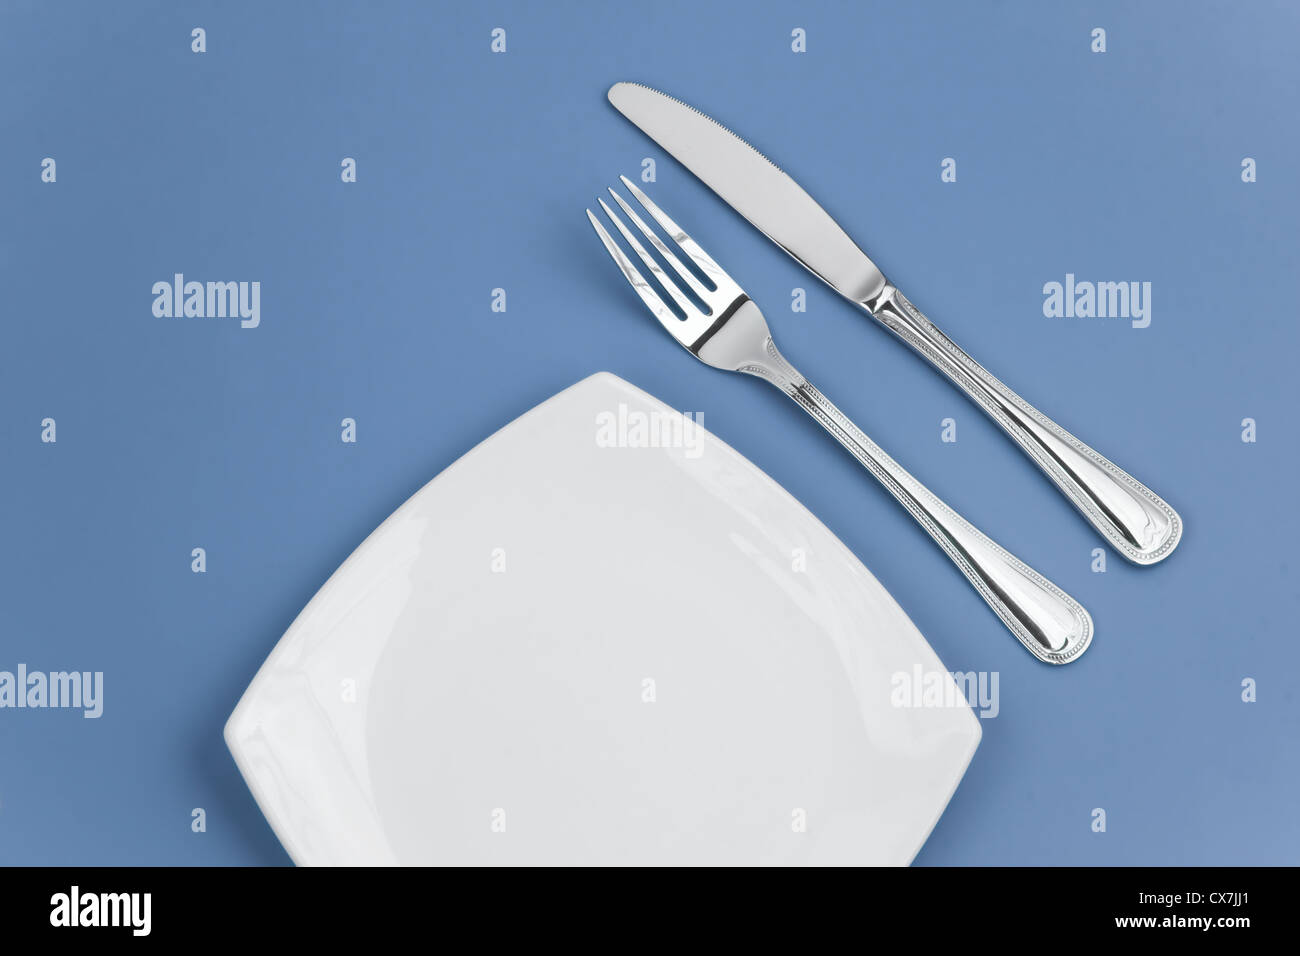 Couteau, fourchette et la plaque carrée blanche sur fond bleu Banque D'Images